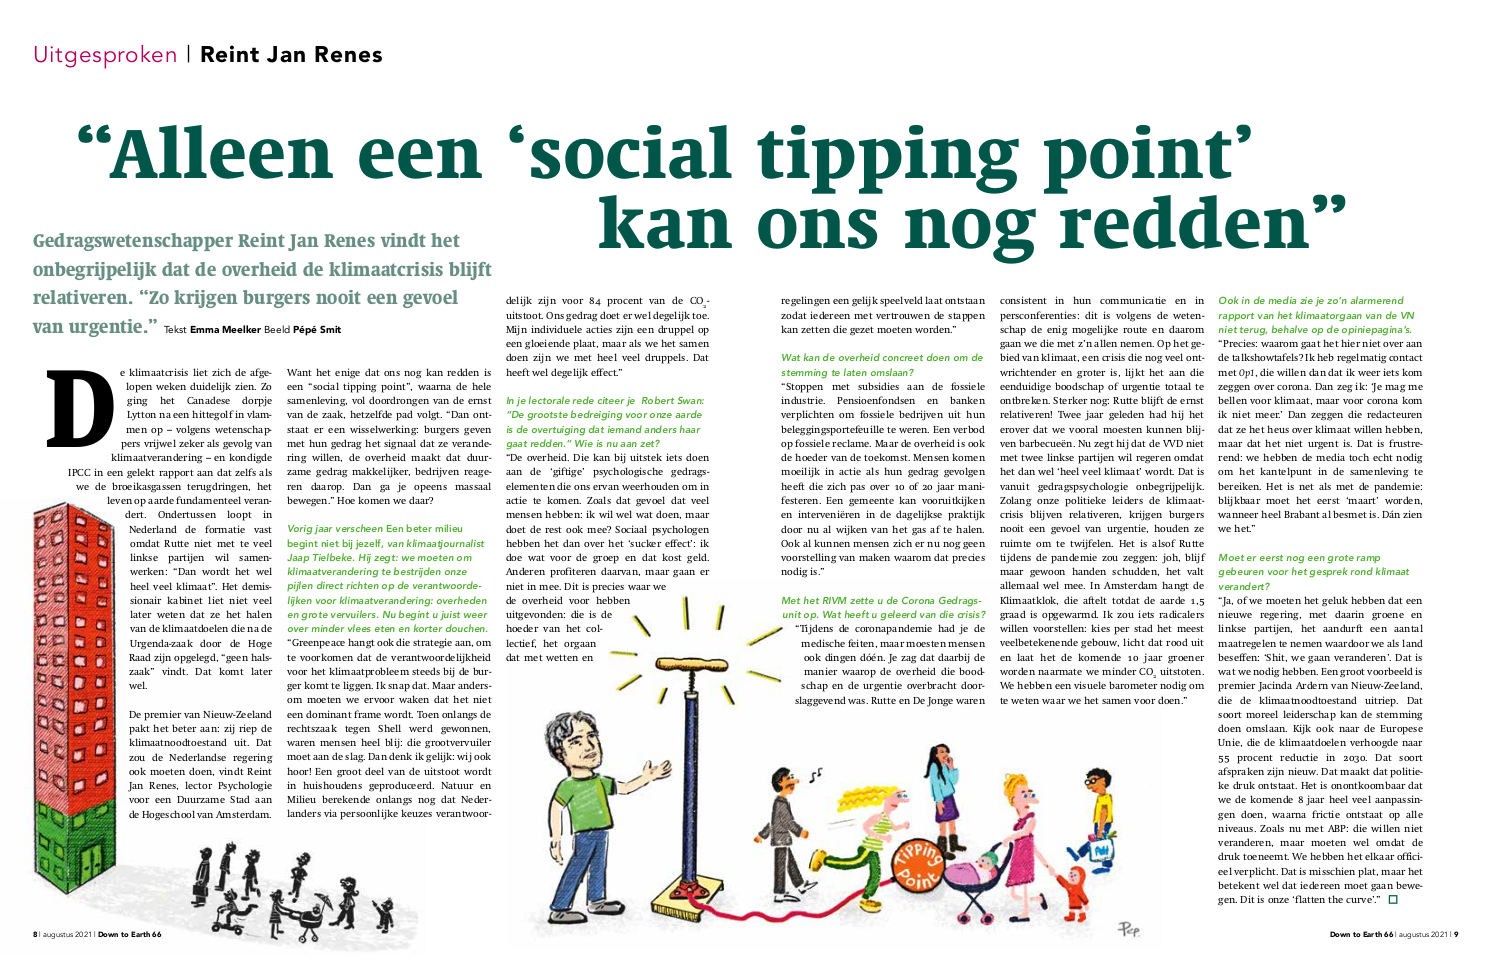 Alleen een social tipping point kan ons nog redden - interview Reintjan Renes in Down to Earth Magazine